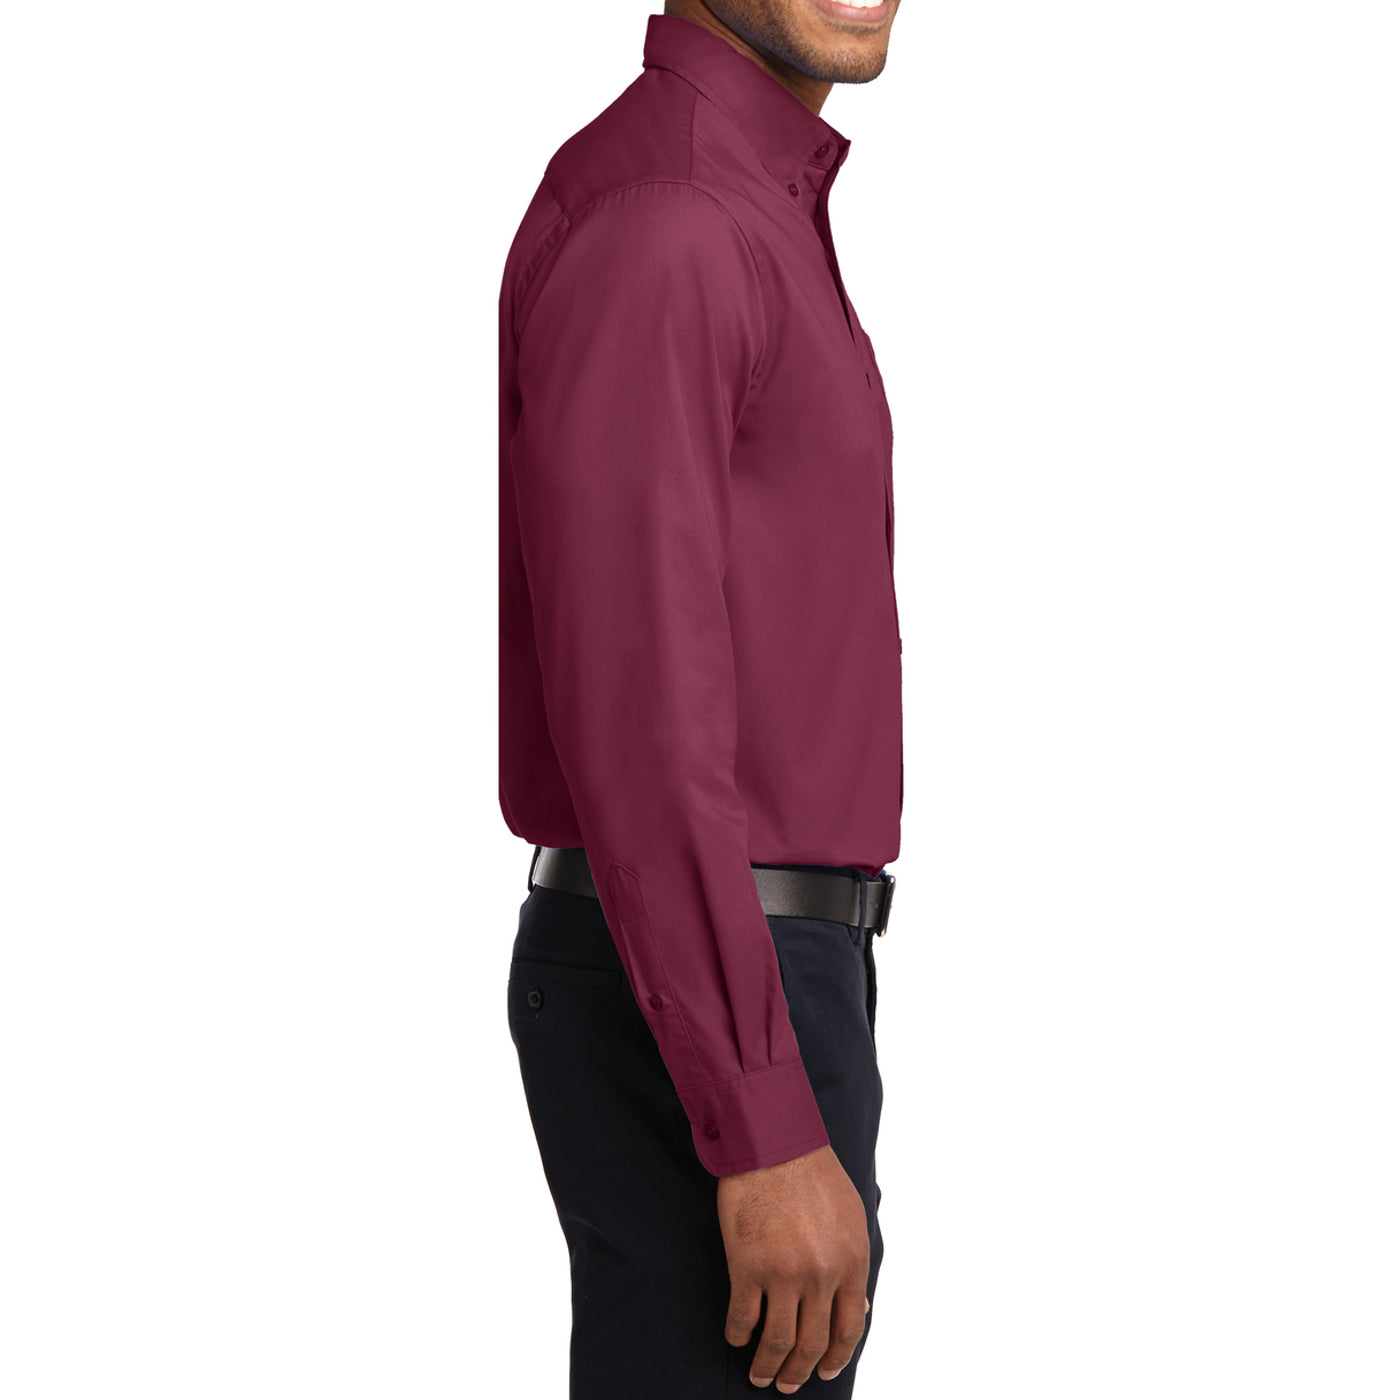 Men's Long Sleeve Easy Care Shirt - Burgundy/ Light Stone - Side